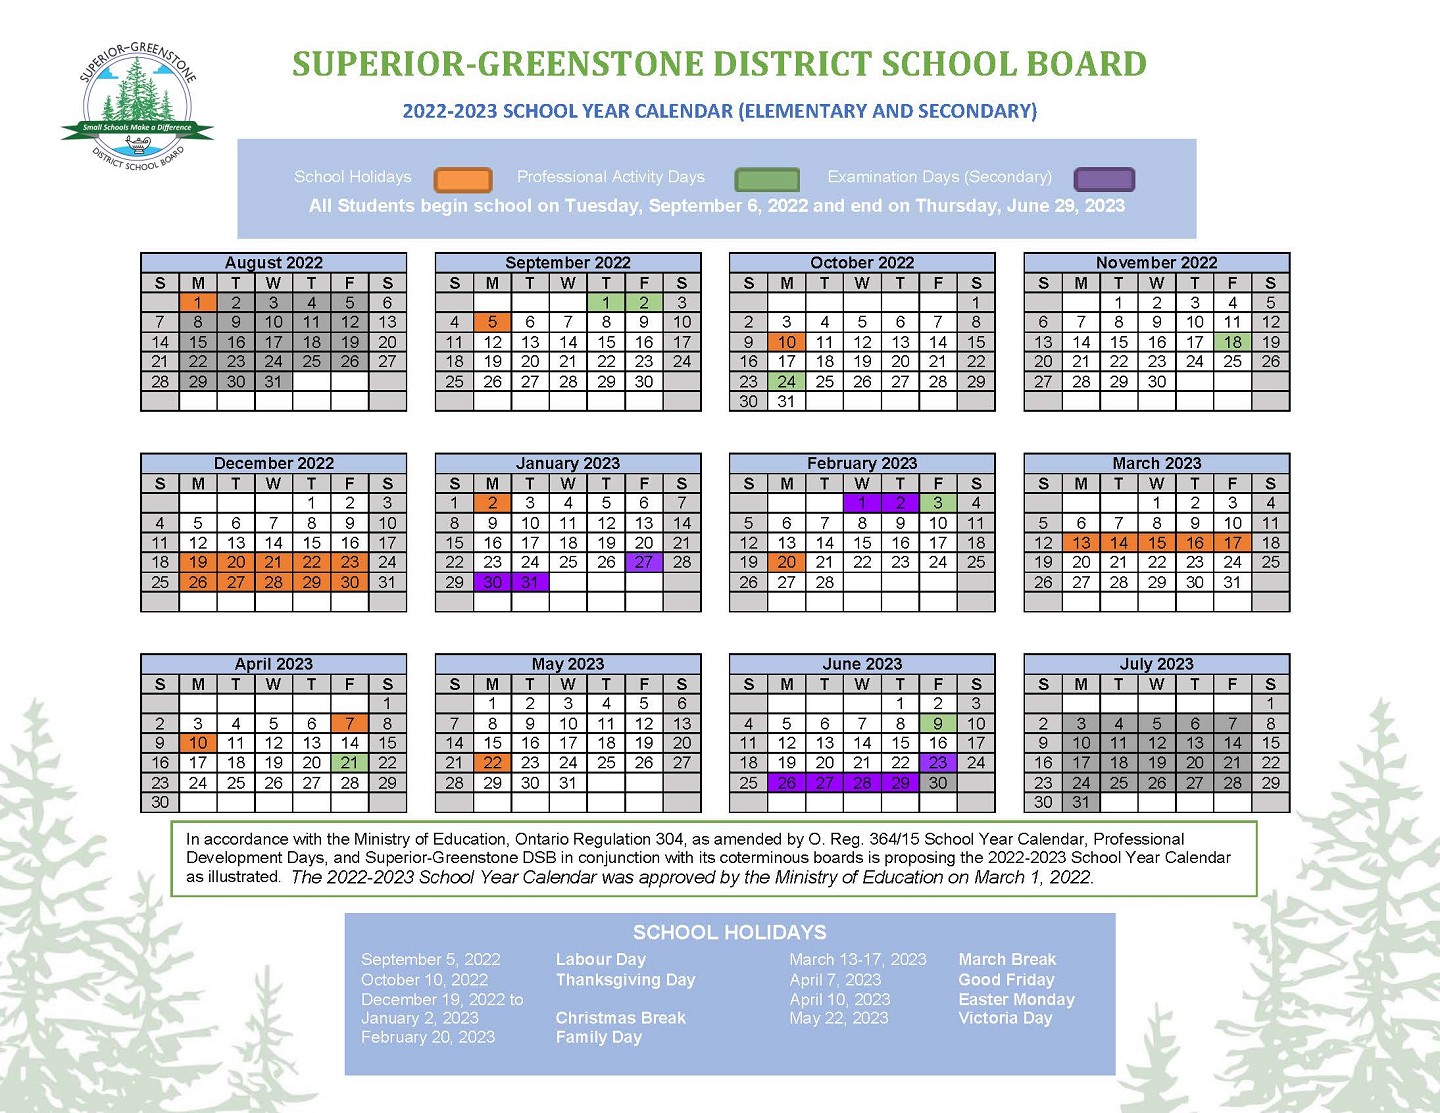 2022-2023 School Year Calendar for SGDSB